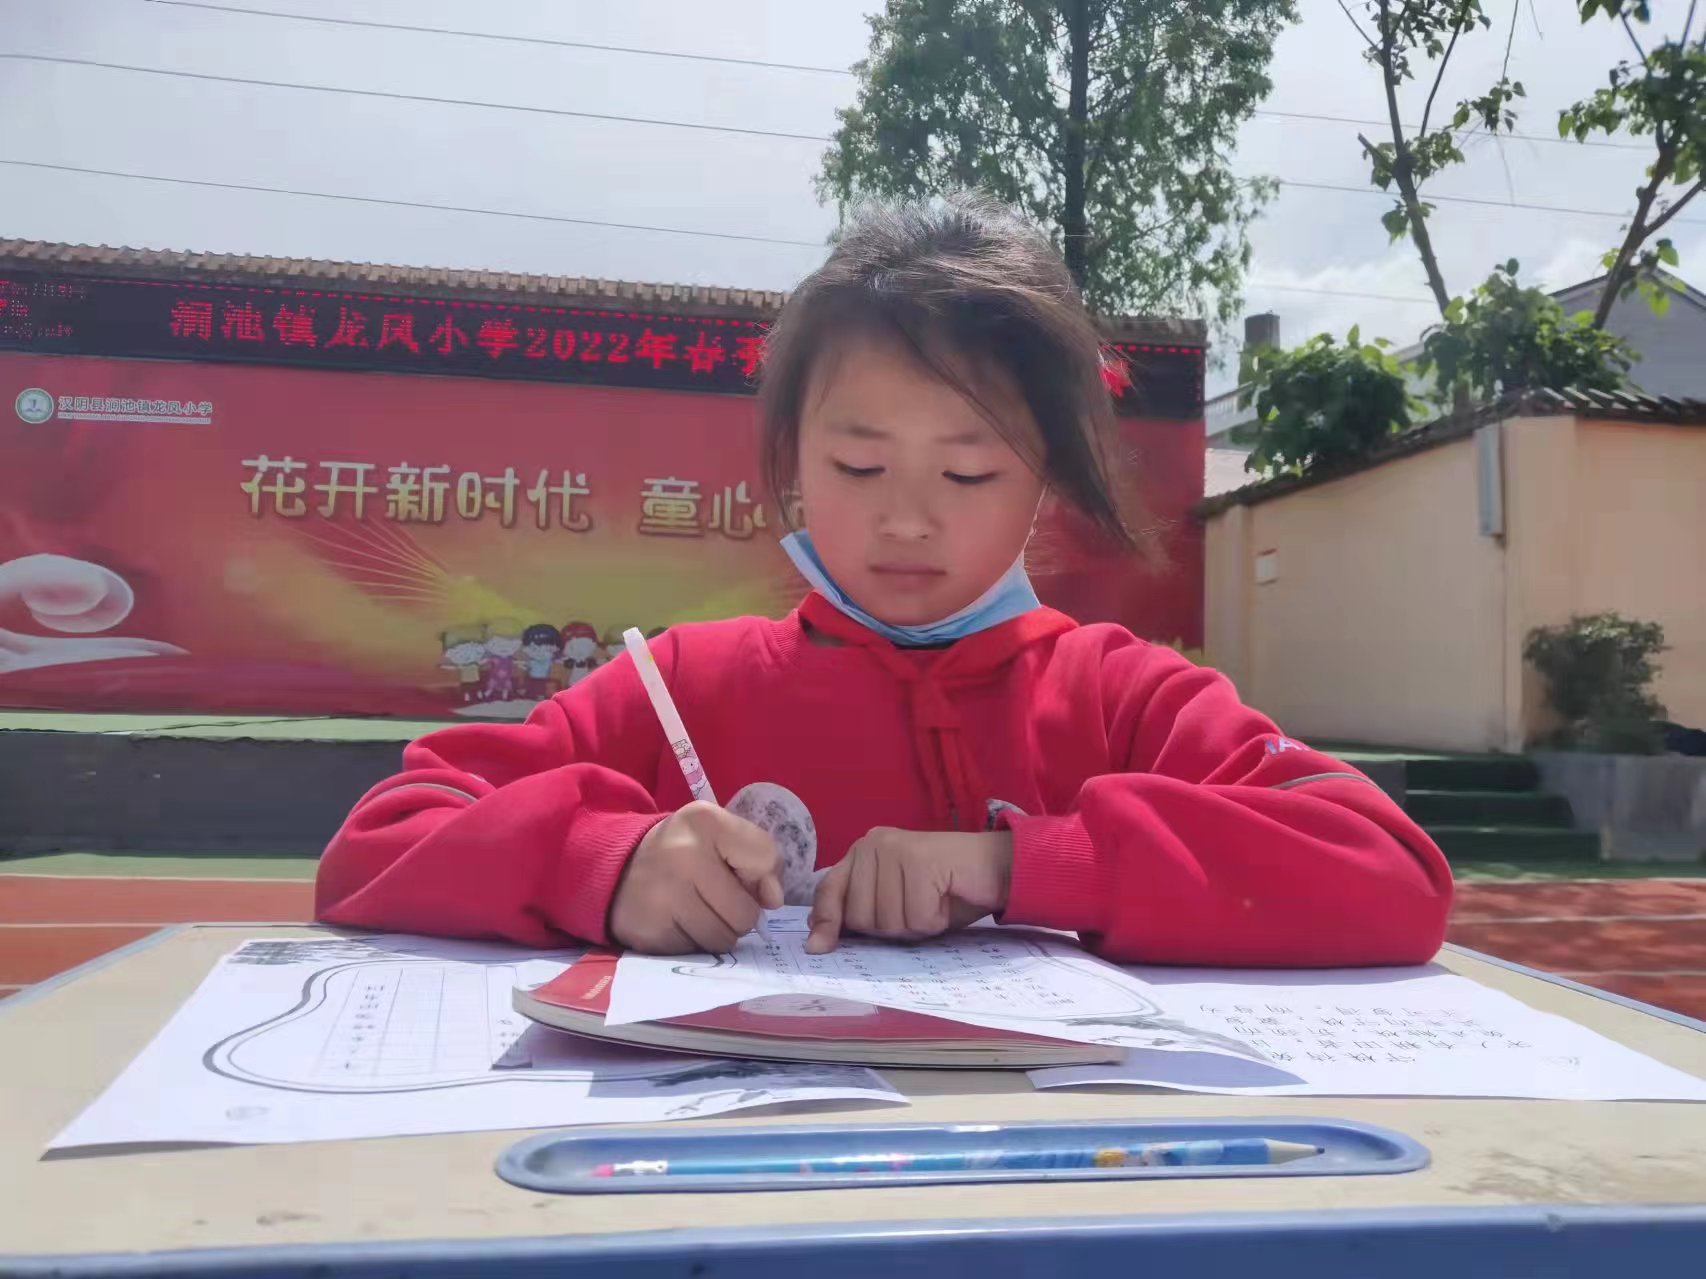 汉阴县涧池镇龙凤小学举行汉字书写比赛活动